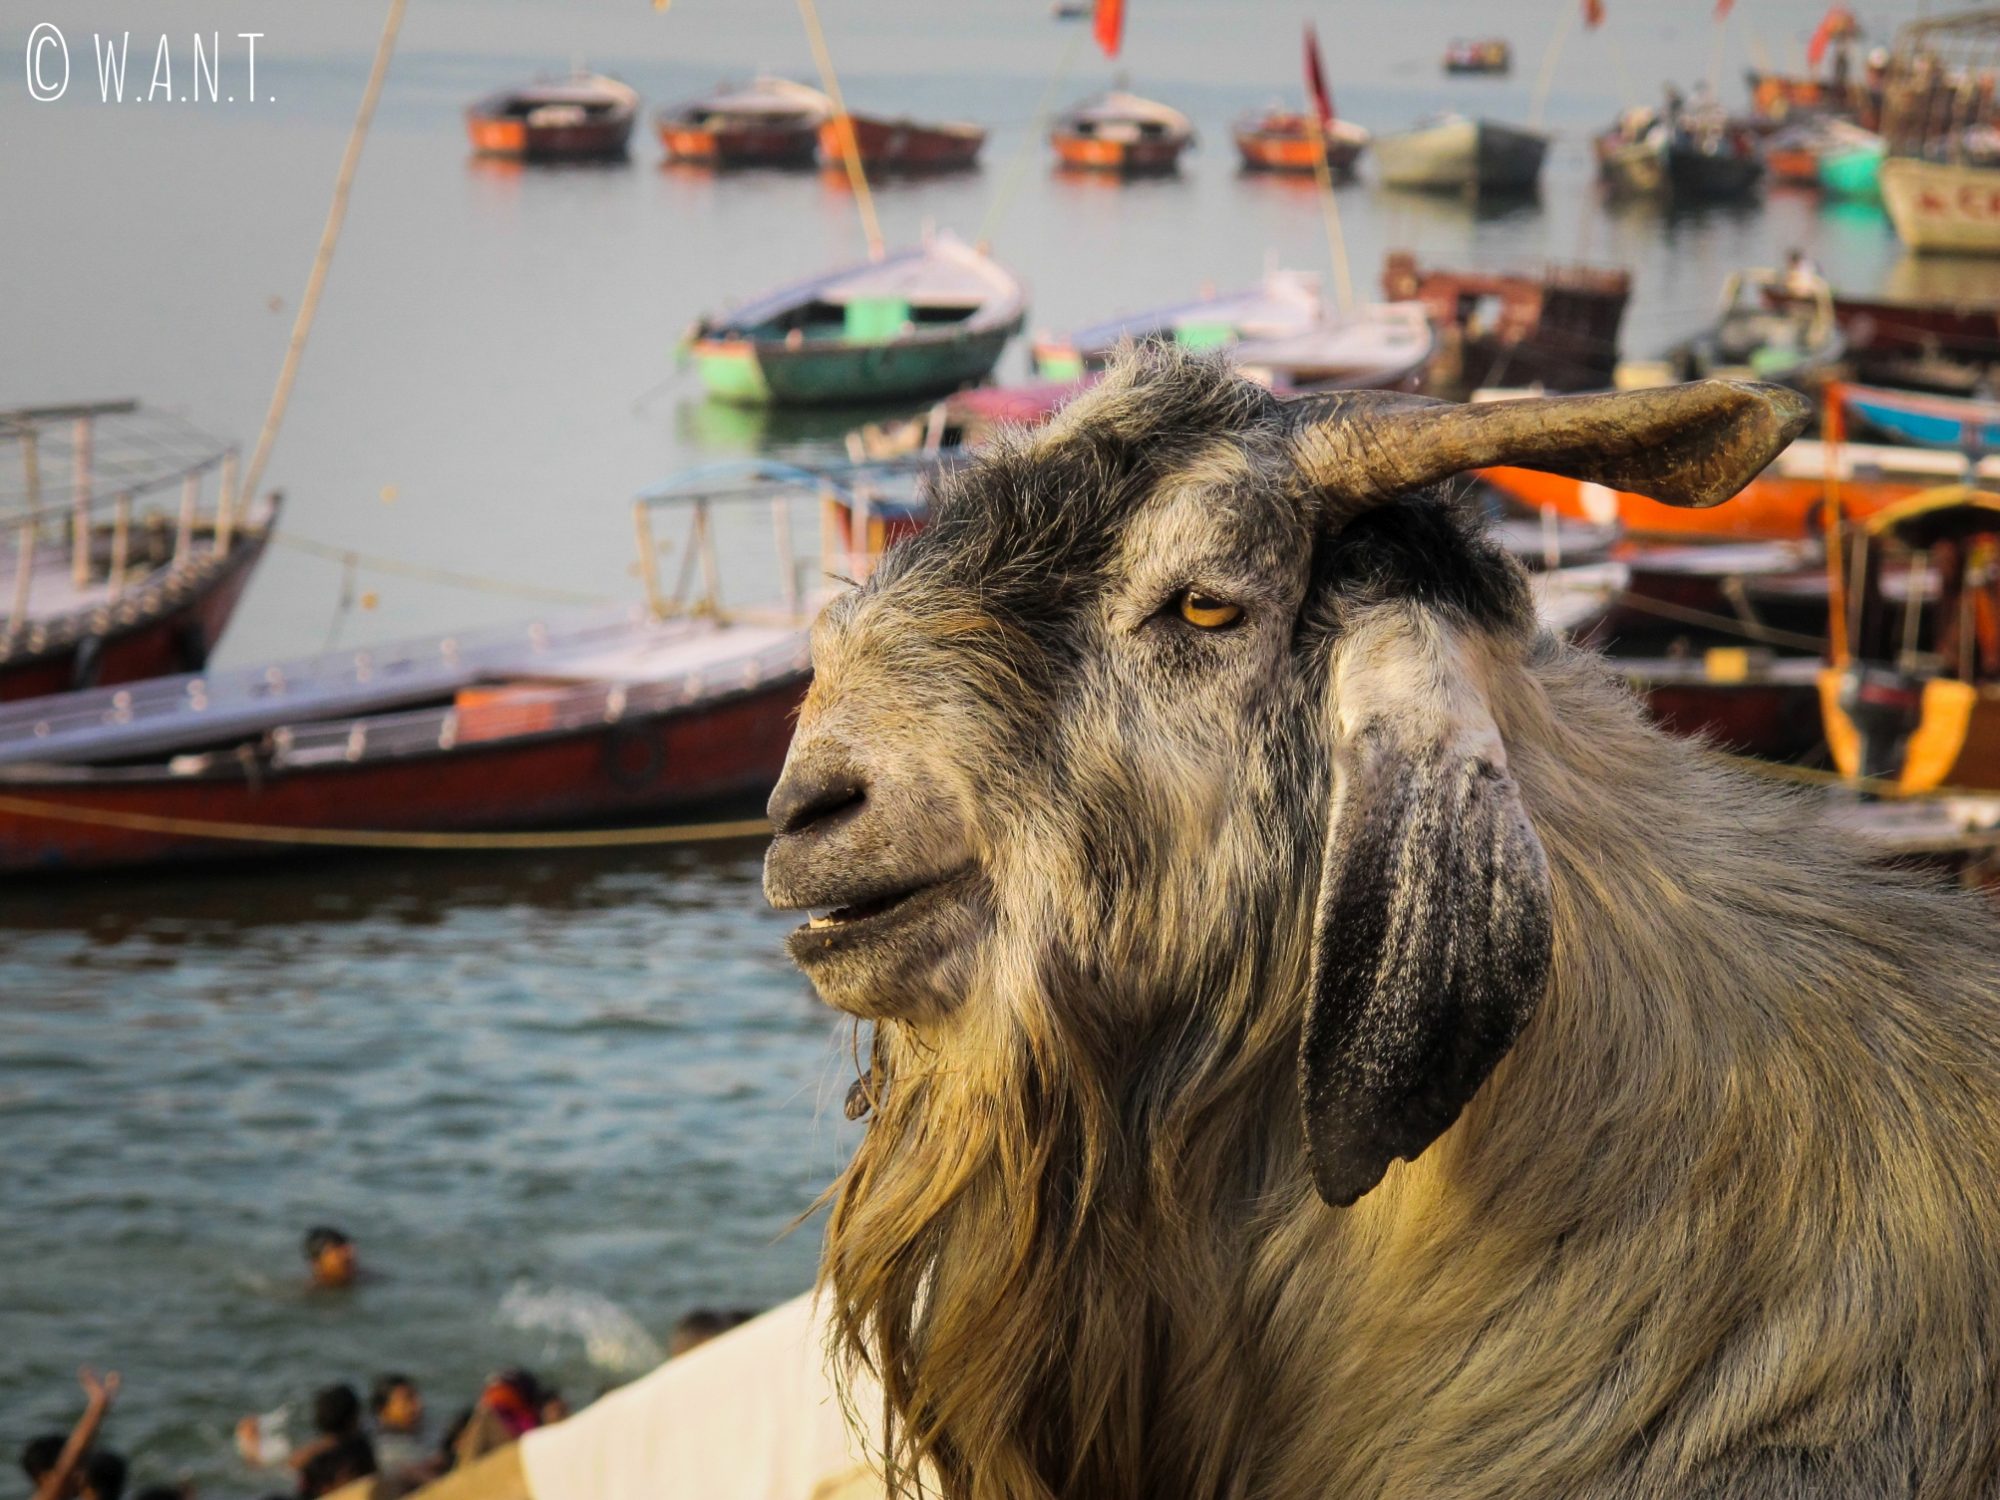 Ce bouc, installé sur le bord du Ghat, contemple paisiblement le Gange